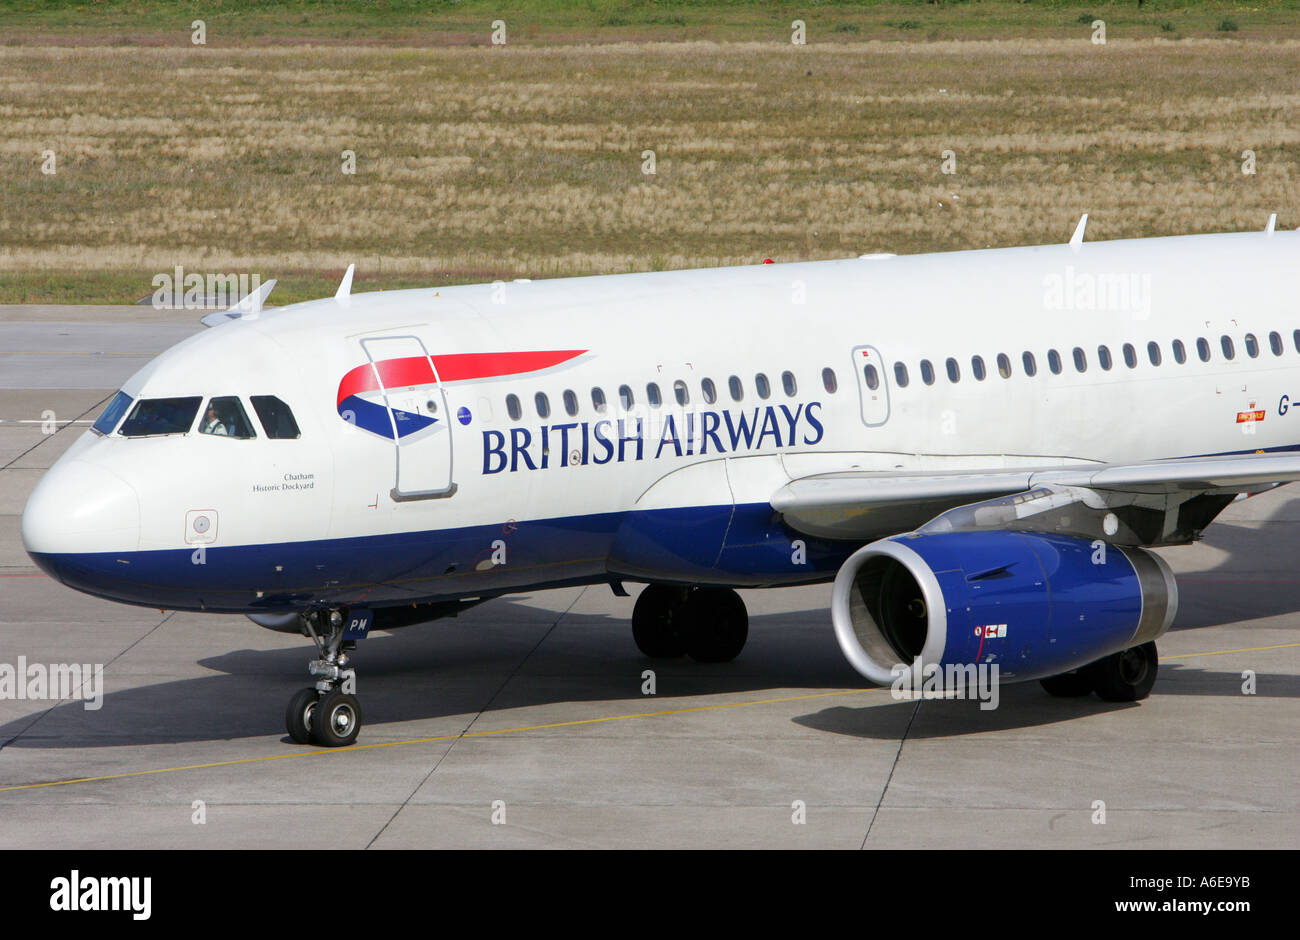 British Airways airplane at Tegel airport, Berlin Stock Photo